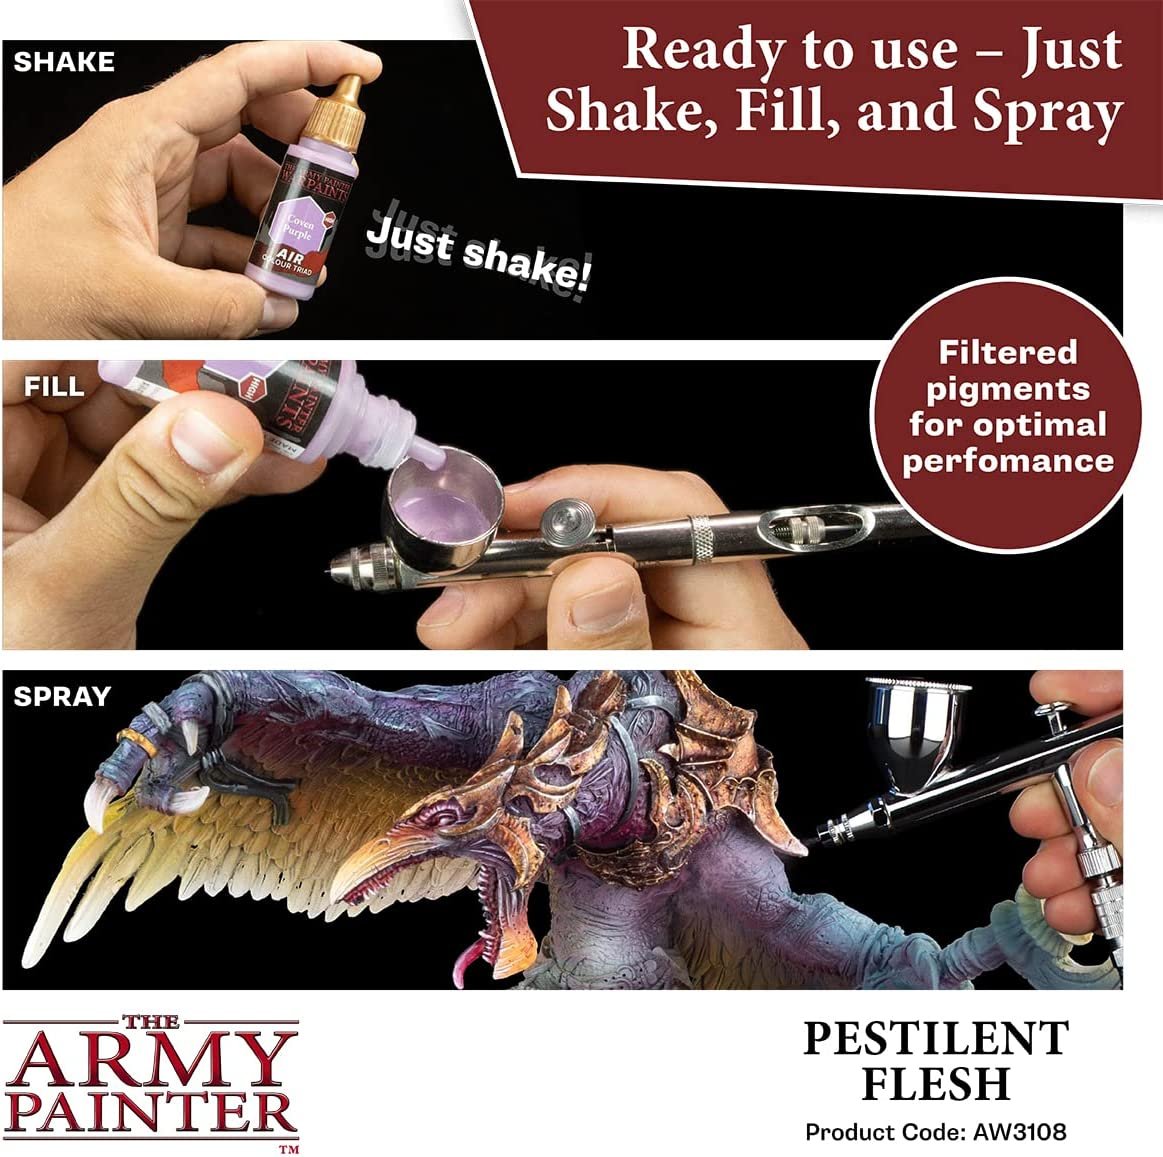 The Army Painter - Warpaints Air: Pestilent Flesh (18ml/0.6oz)